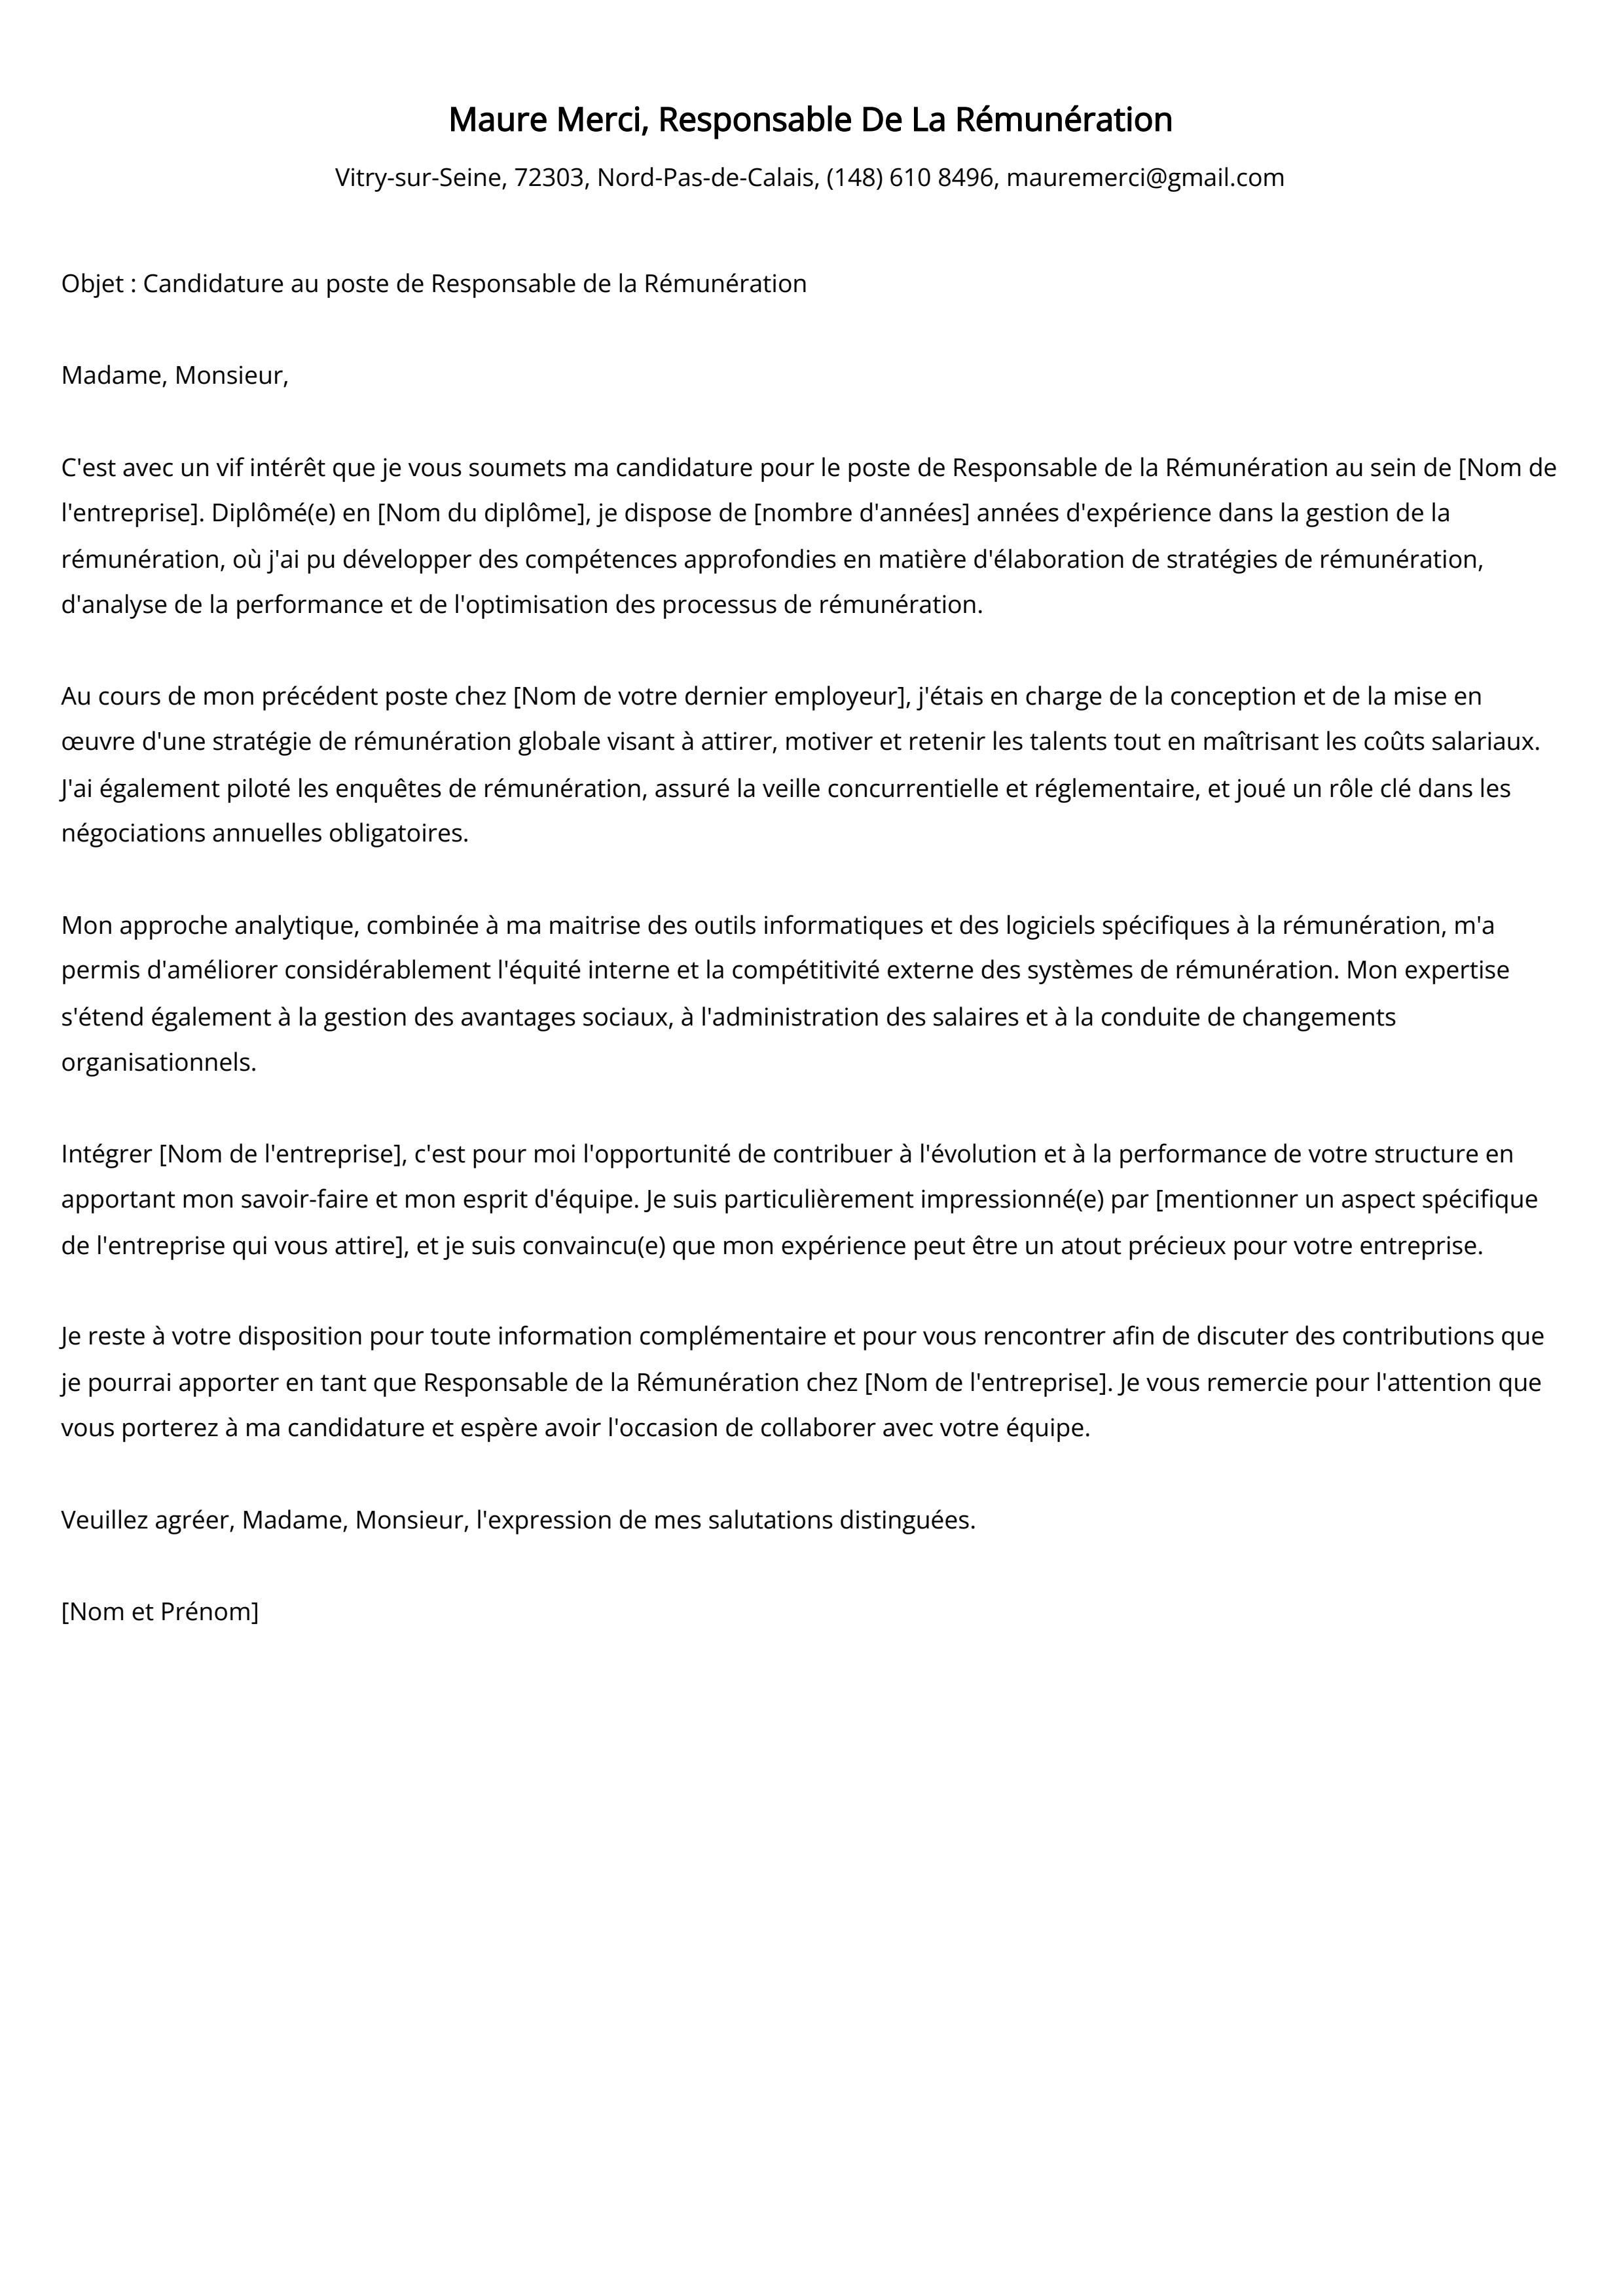 Responsable De La Rémunération Cover Letter Example